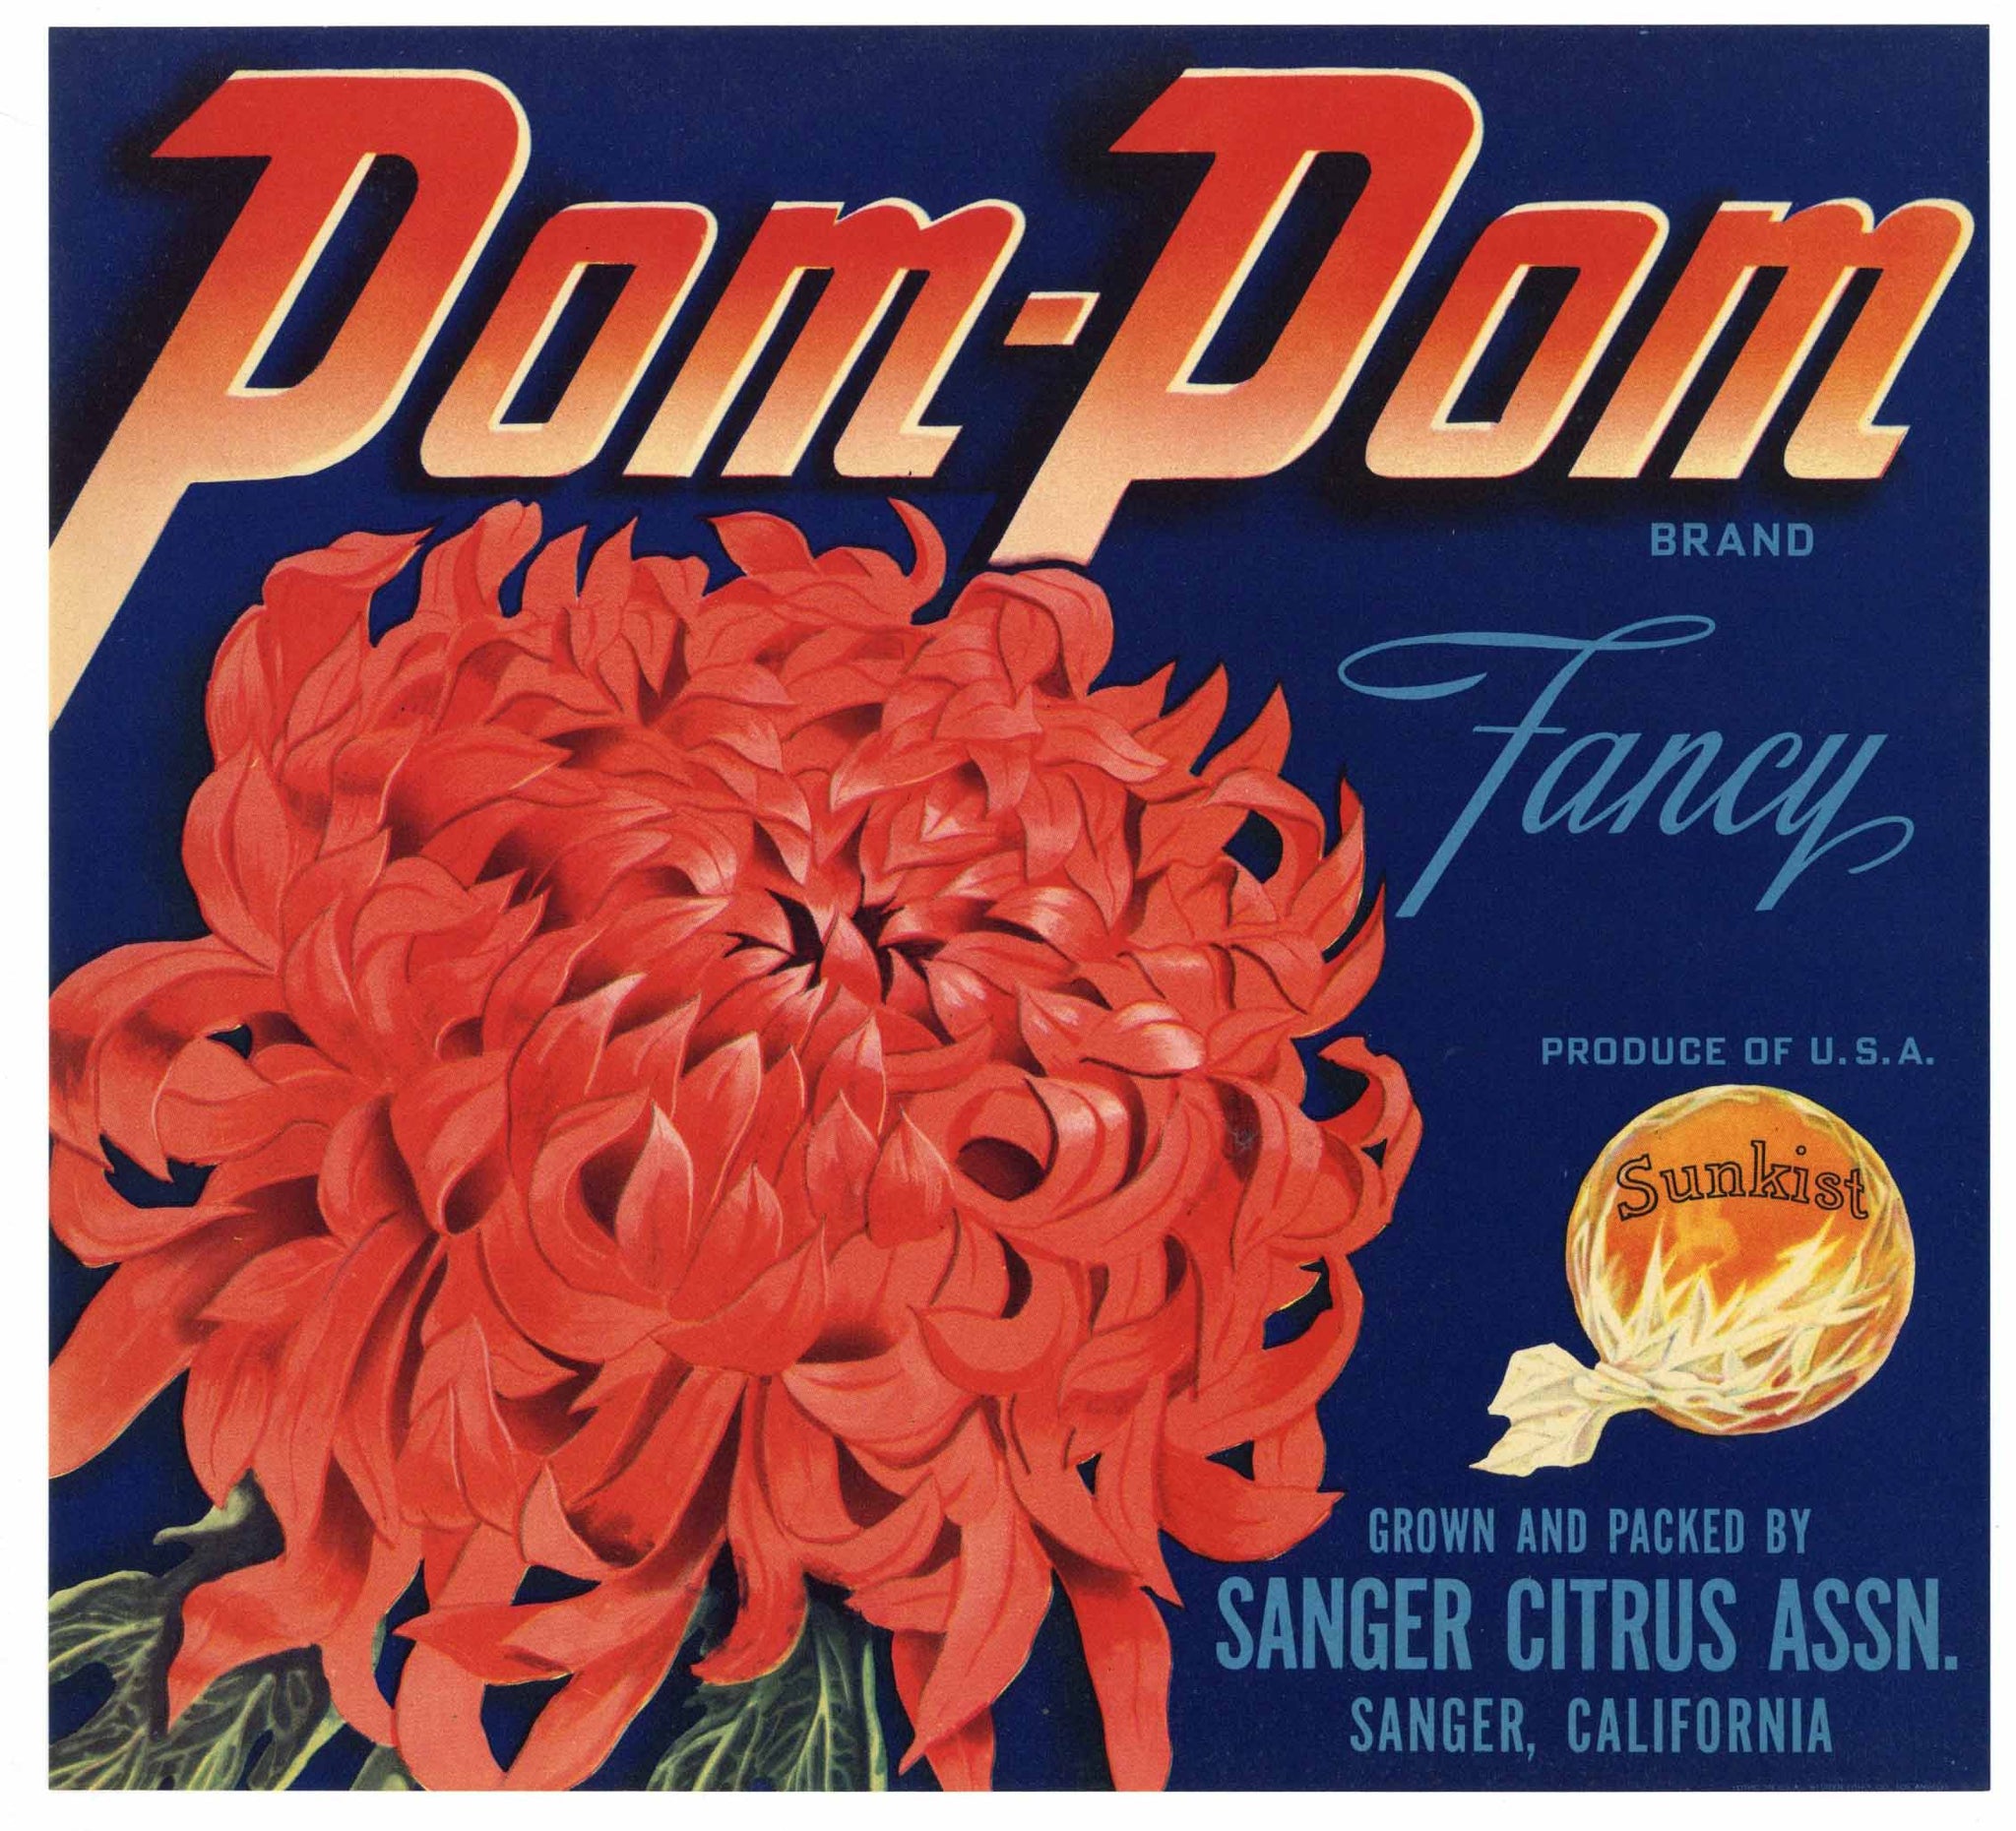 Pom Pom Brand Vintage Sanger Orange Crate Label